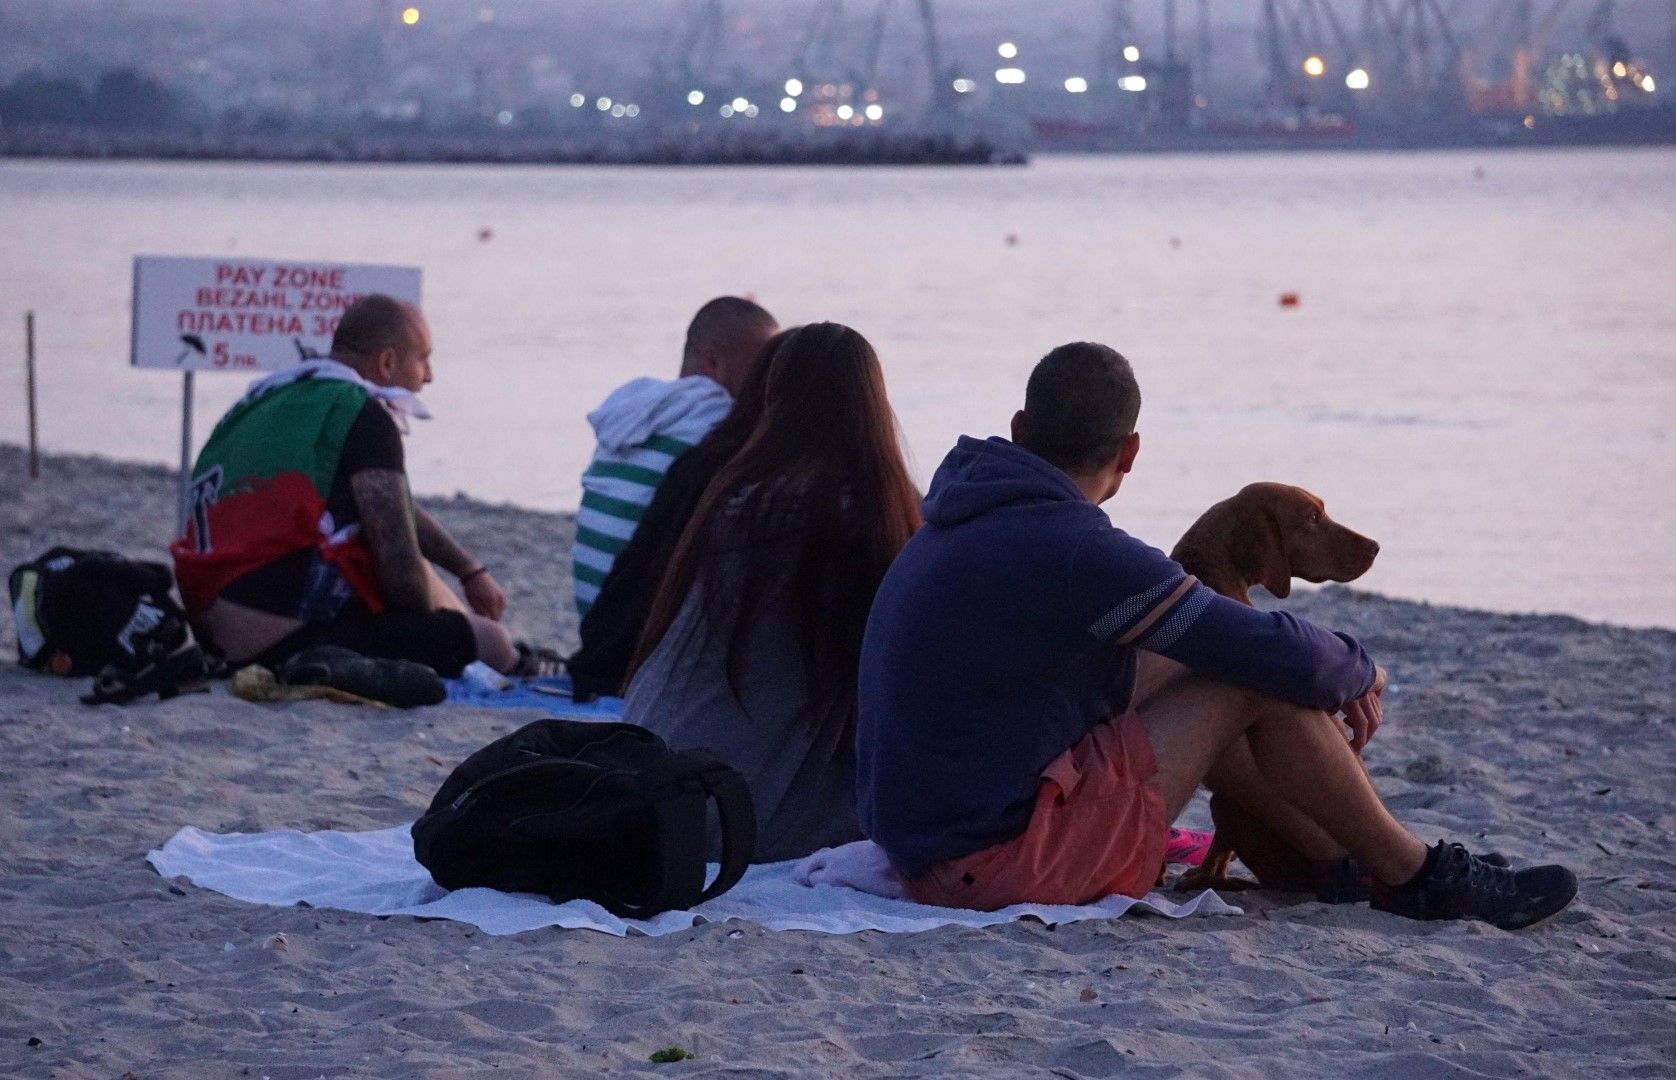 Значително по-малко хора дошли да посрещнат изгрева за хипарския празник "Джулая" на плажа във Варна